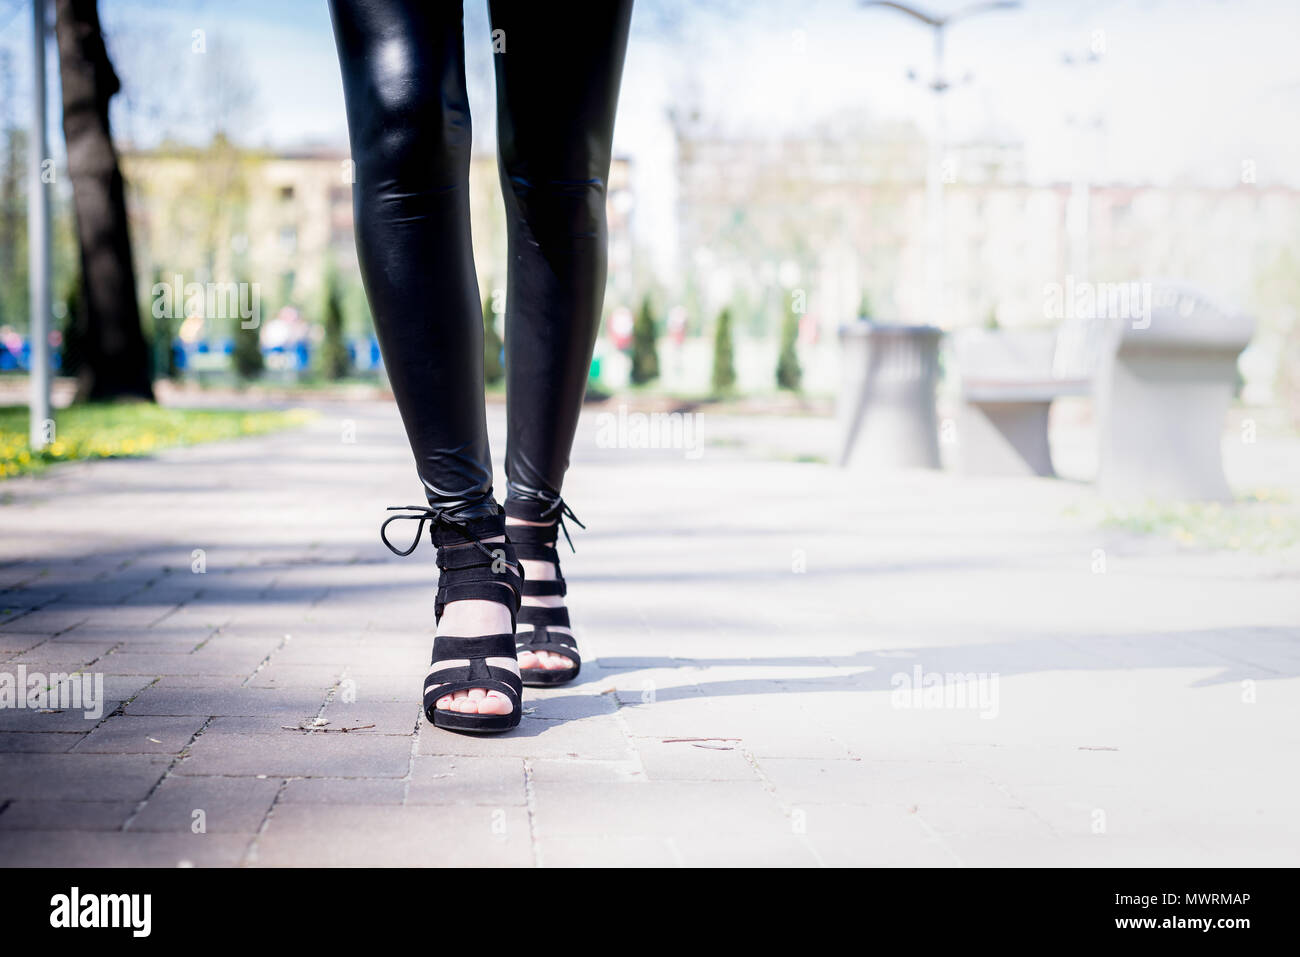 Ver las piernas de una mujer caminando. Mujer llevar zapatos con tacón de  aguja. La chica en pantalones negros se mueve alrededor del parque fuera.  Beuty y concepto de moda Fotografía de